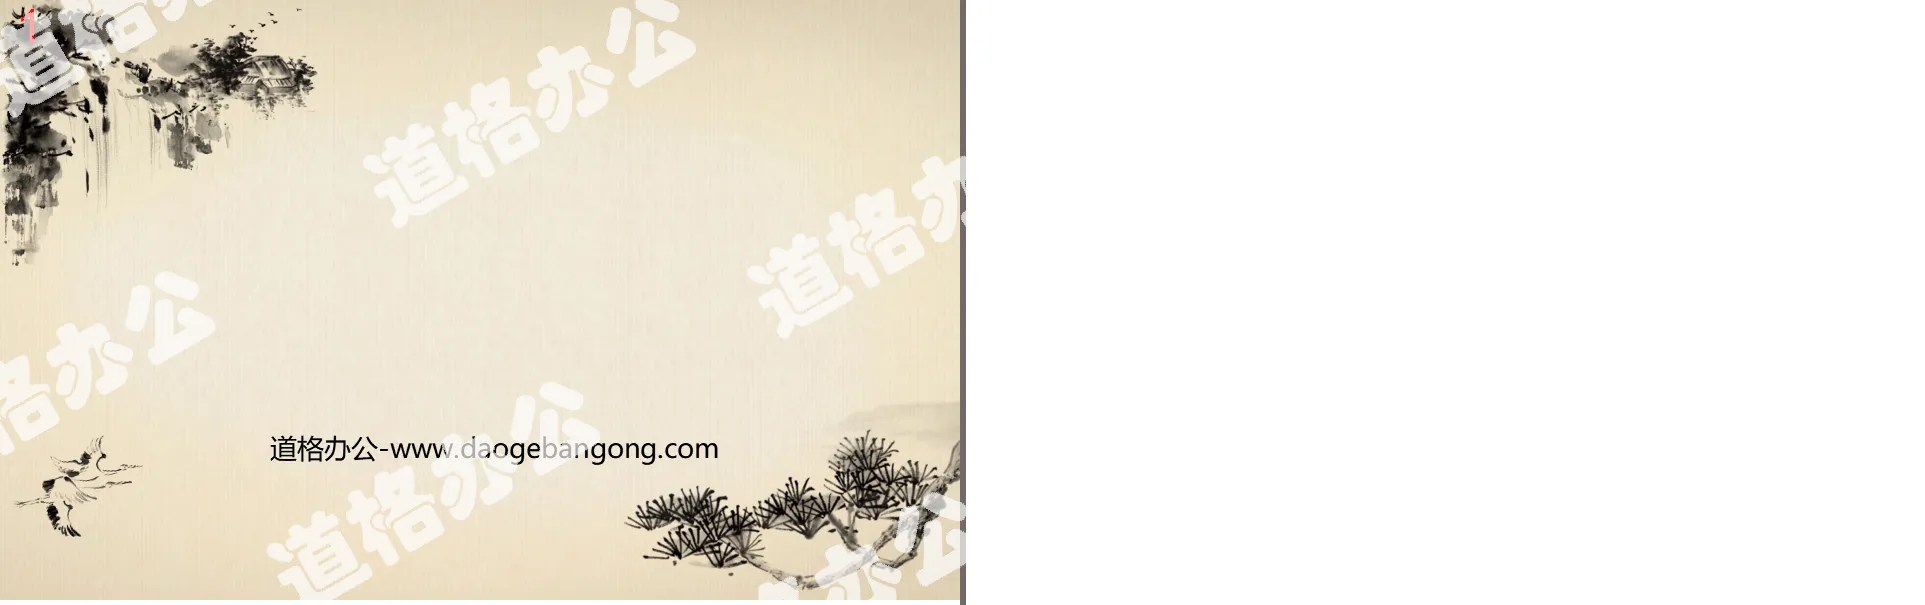 水墨古松飞鹤瀑布背景的中国风古典幻灯片背景图片